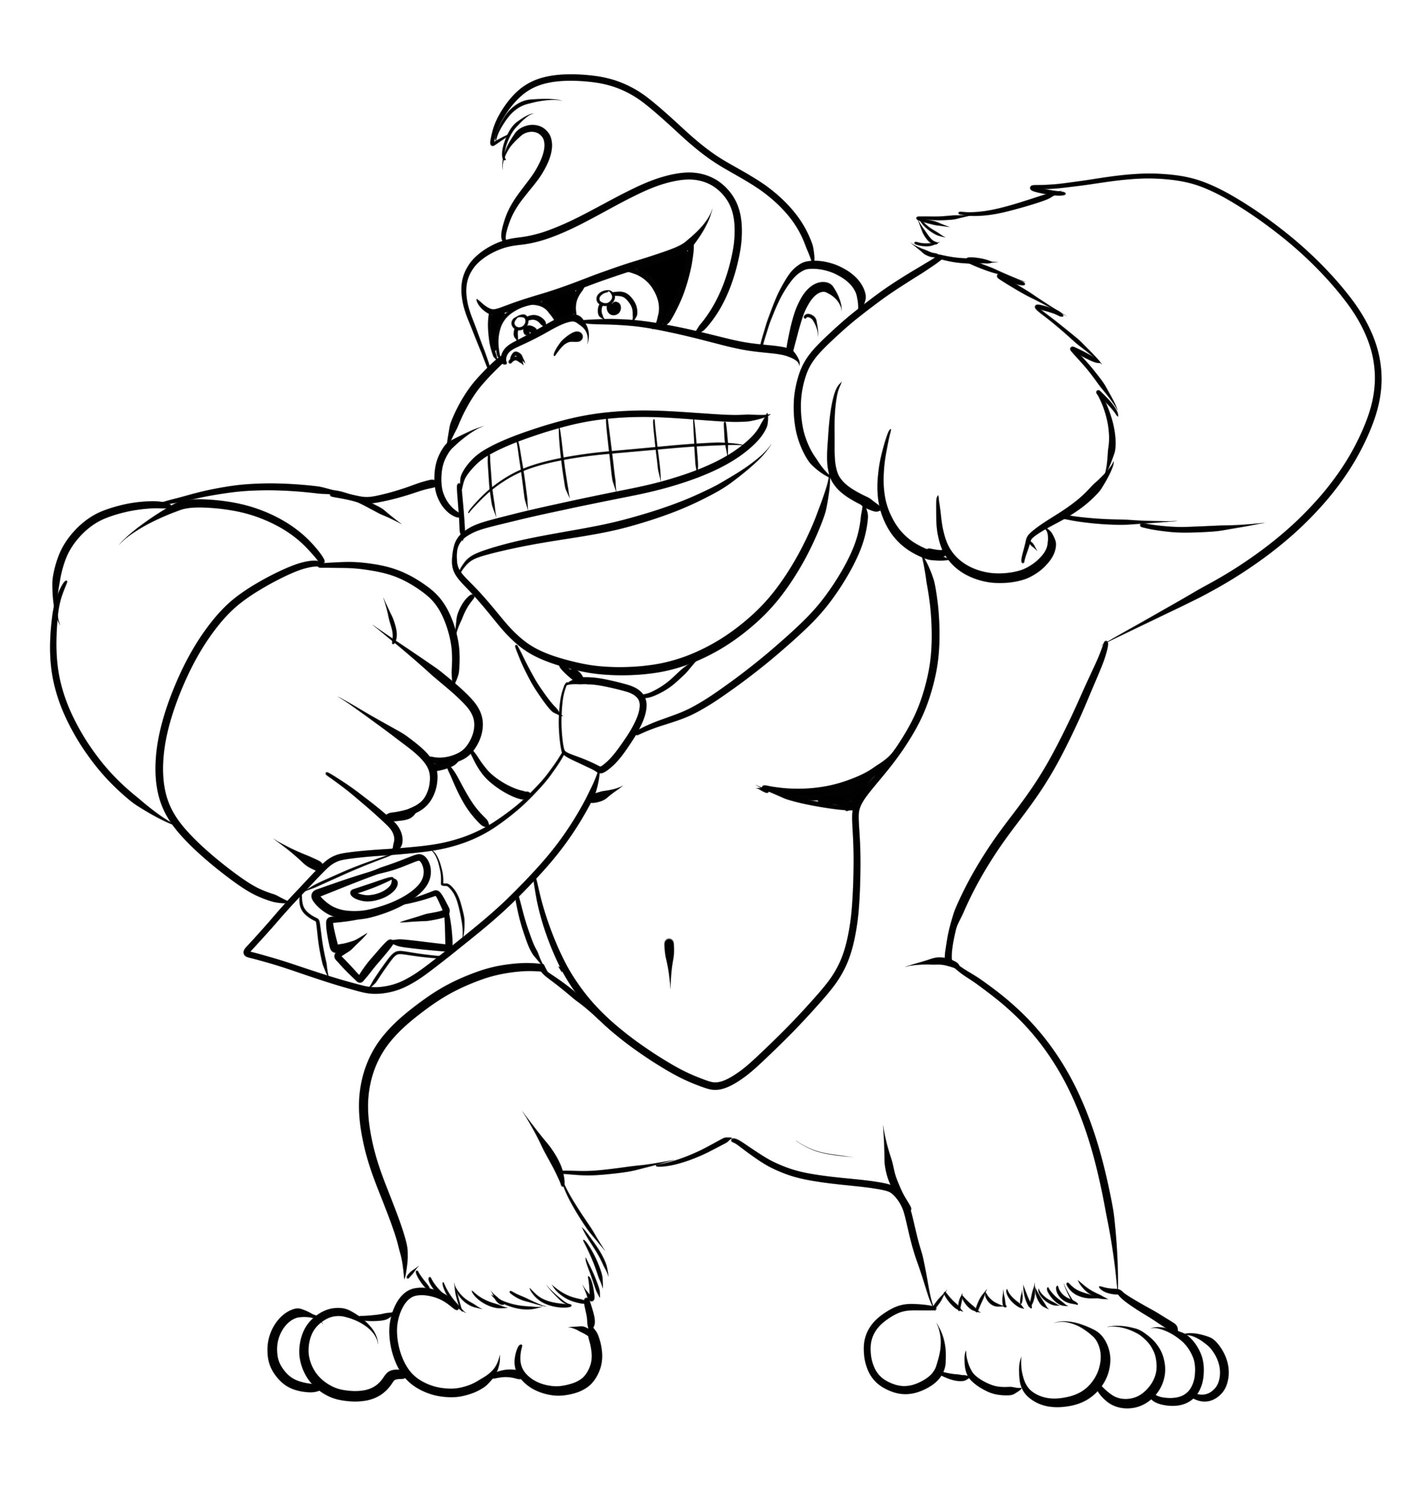 Disegno 02 di Donkey Kong da stampare e colorare